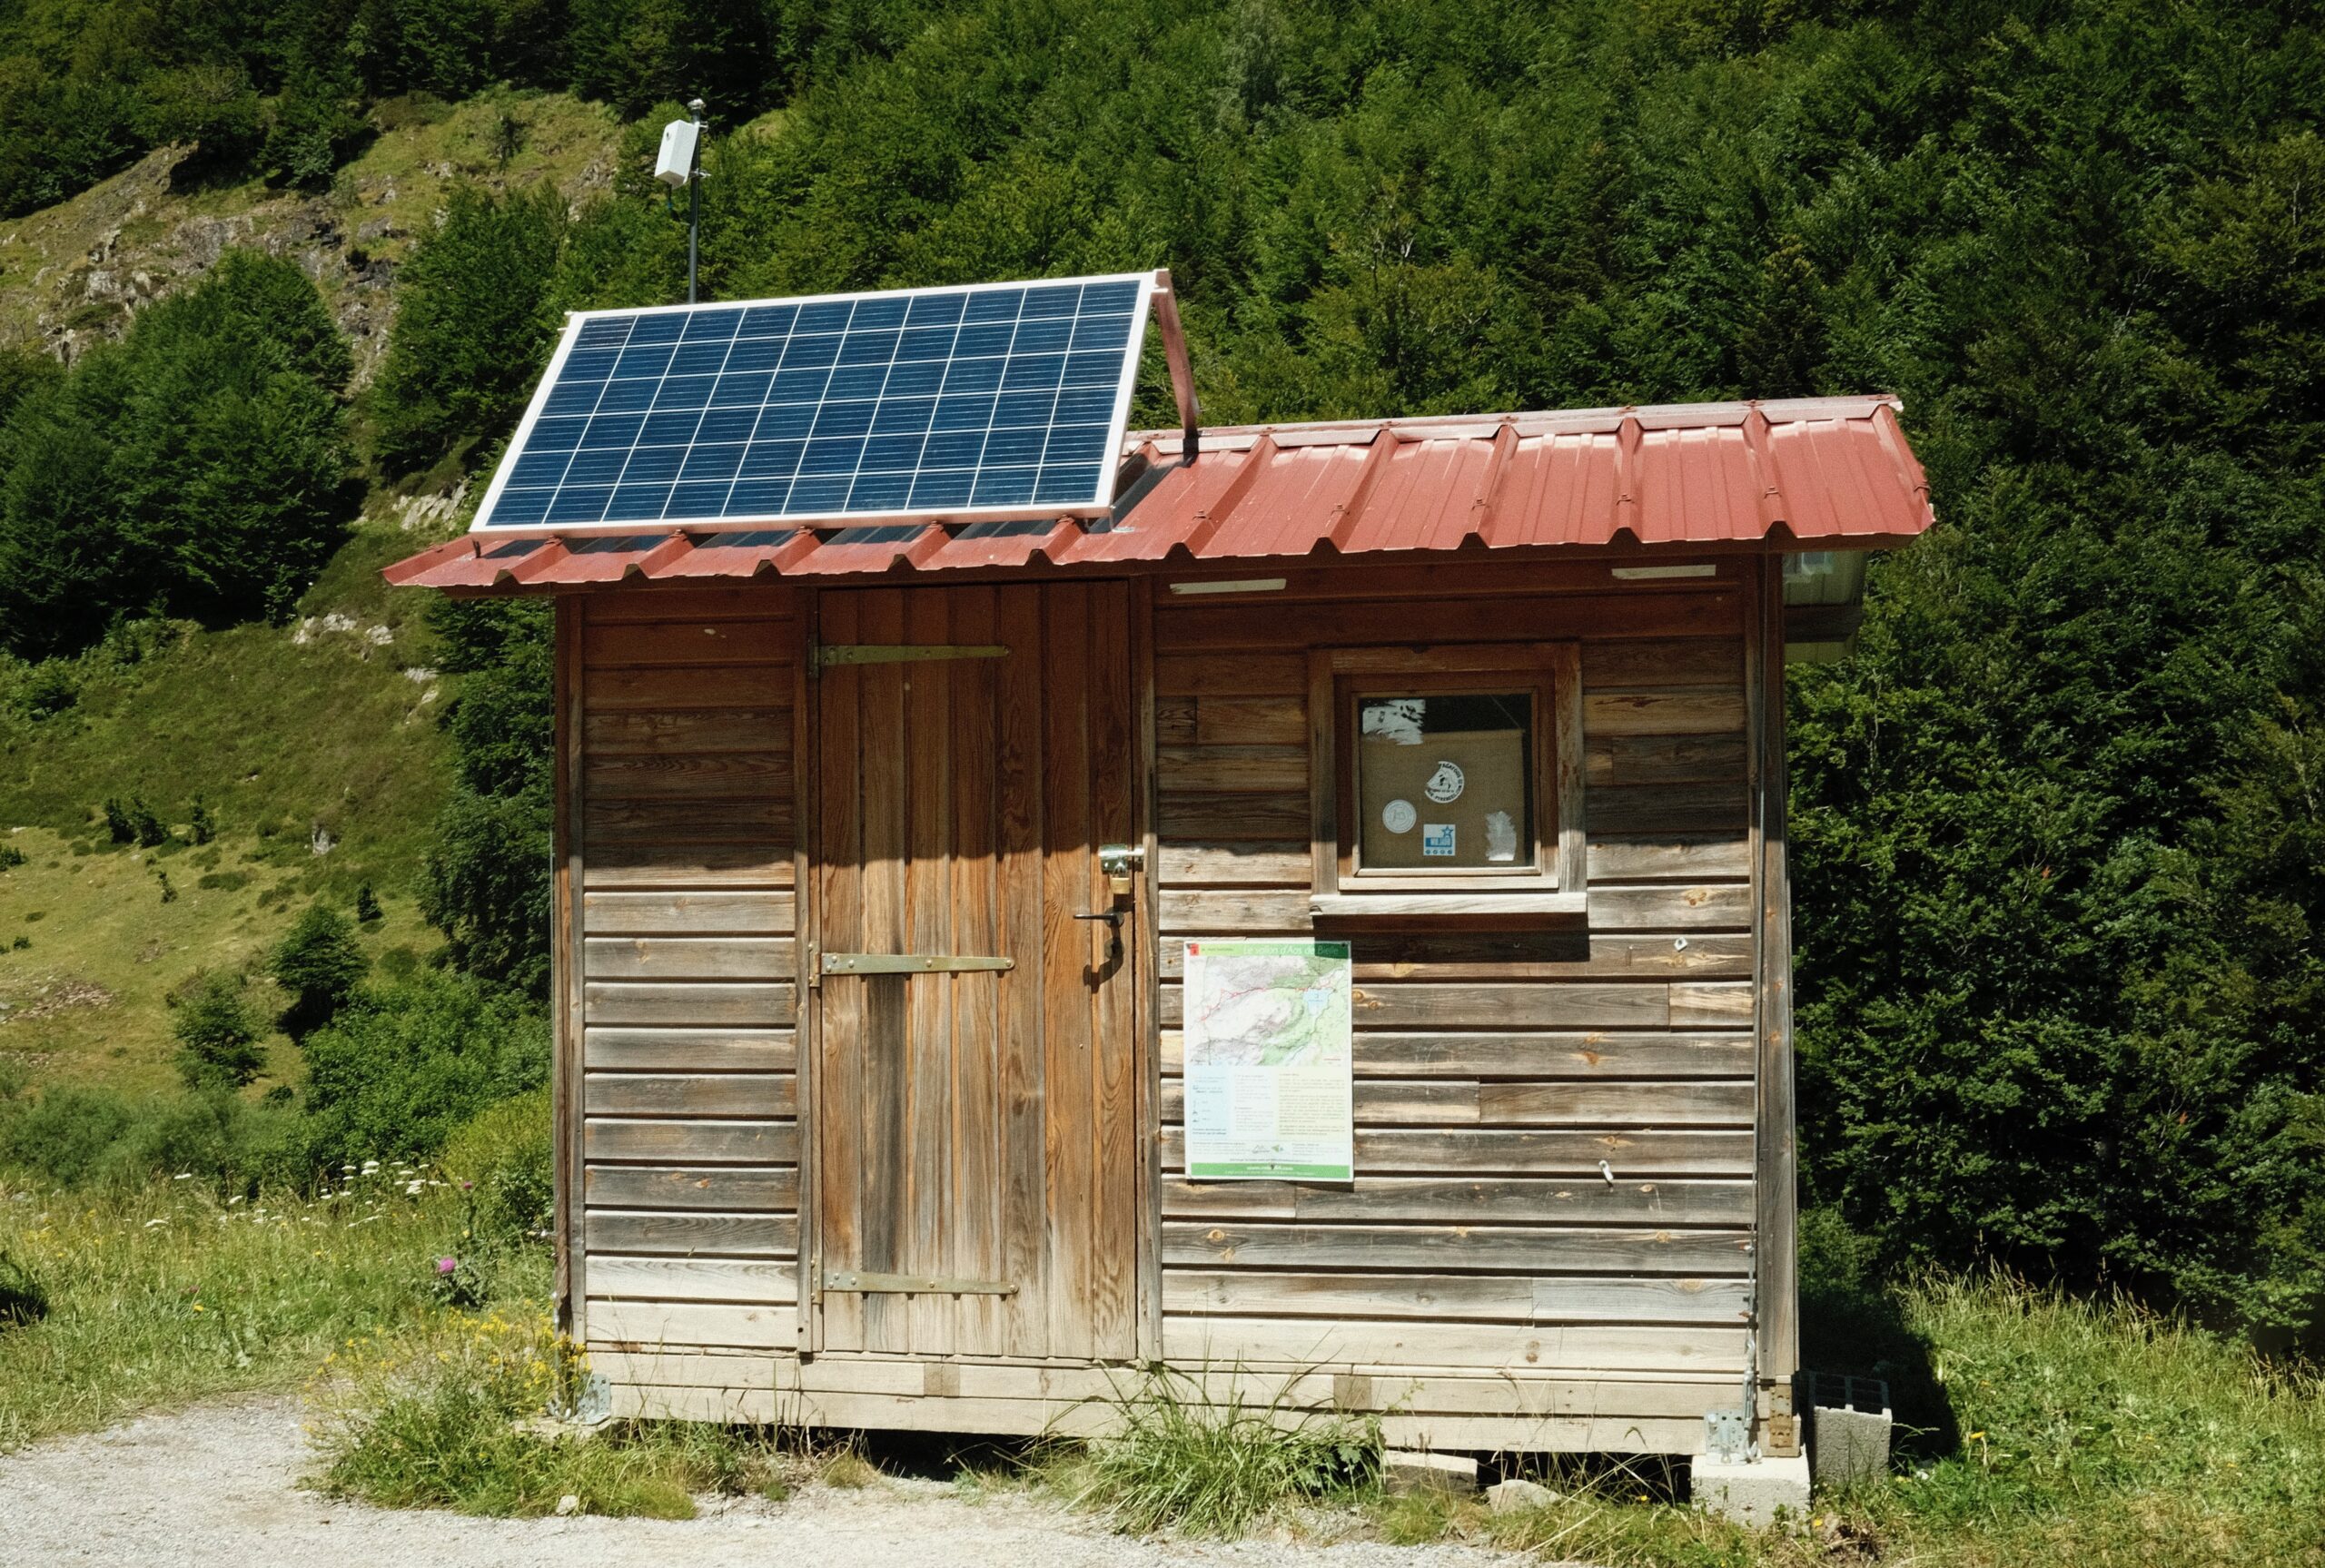 A Hut to Connect the Mountain | République des Pyrénées